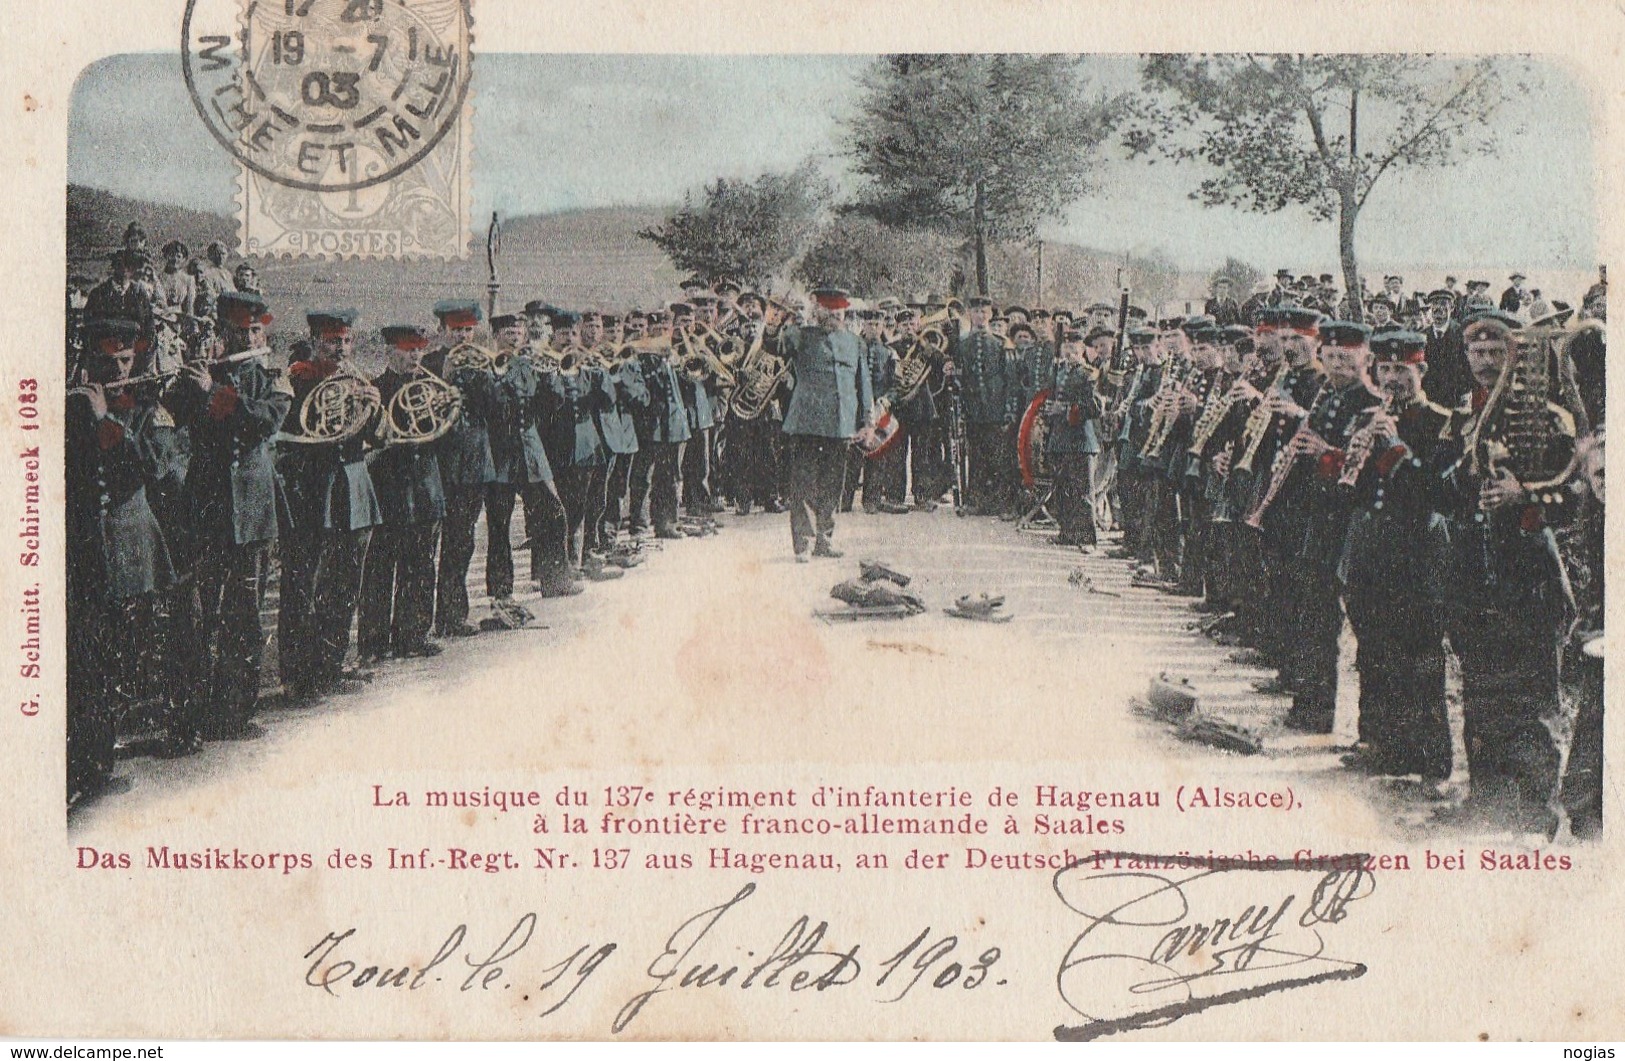 A HAGUENAU - ALSACE - LA MUSIQUE DU 137° R.I. A LA FRONTIERE FRANCO-ALLEMANDE A SAALES - TRES BELLE CARTE-PRECURSEUR-COL - Regiments